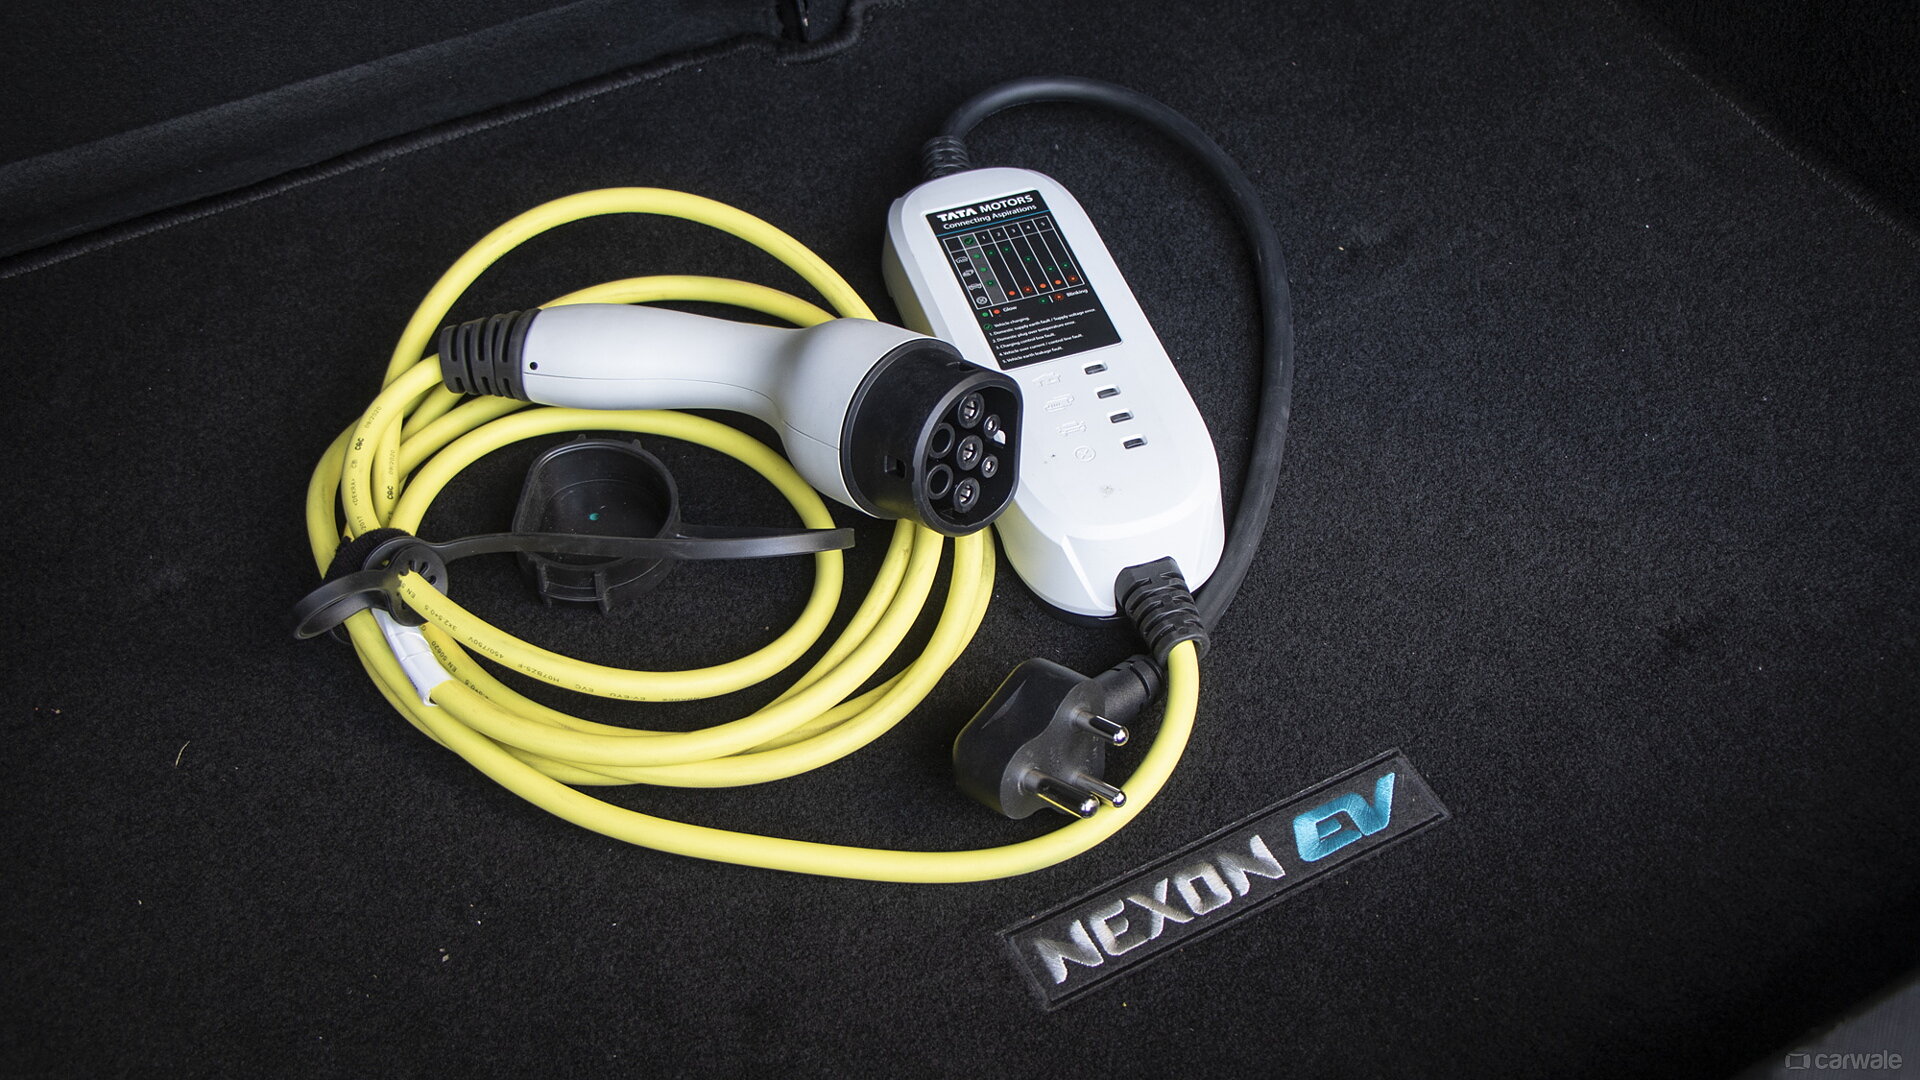 Nexon EV EV Car Charging Portable Charger Image, Nexon EV Photos in